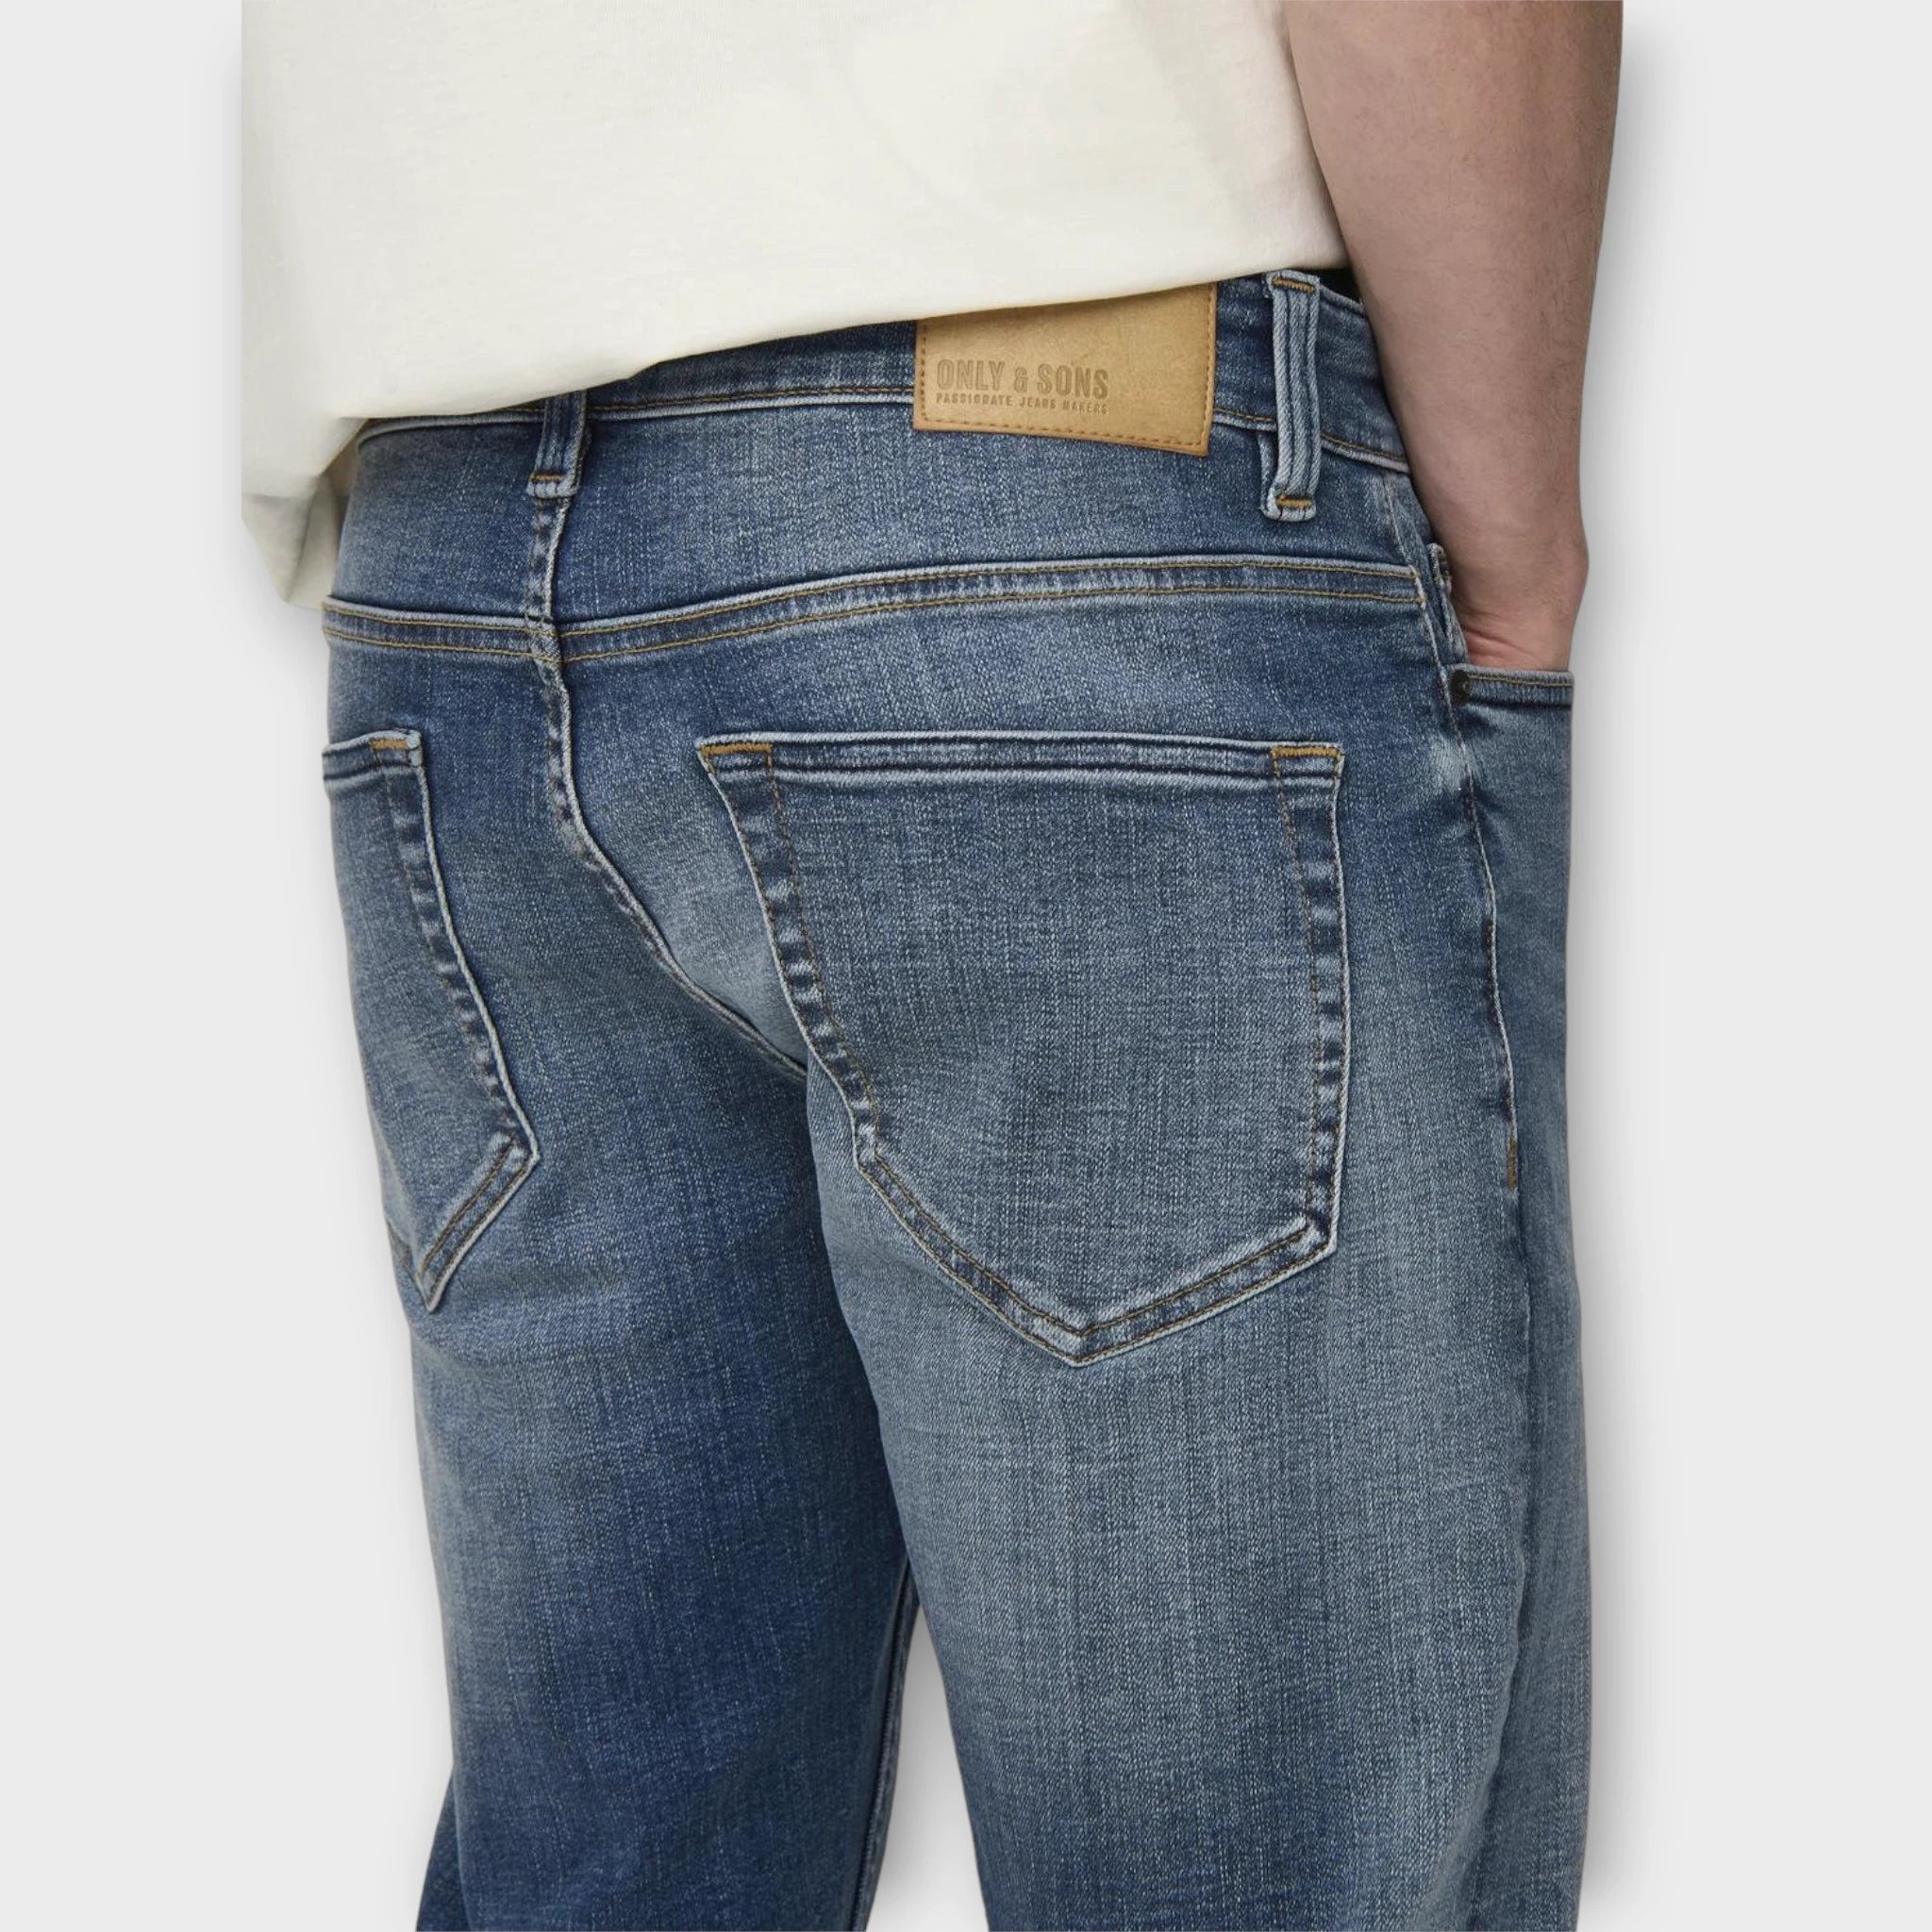 Loom Jax Dbd Jeans Medium Blue Denim, Only and Sons Jeans til mænd. Her sets jeansene i et closeup bagfra.